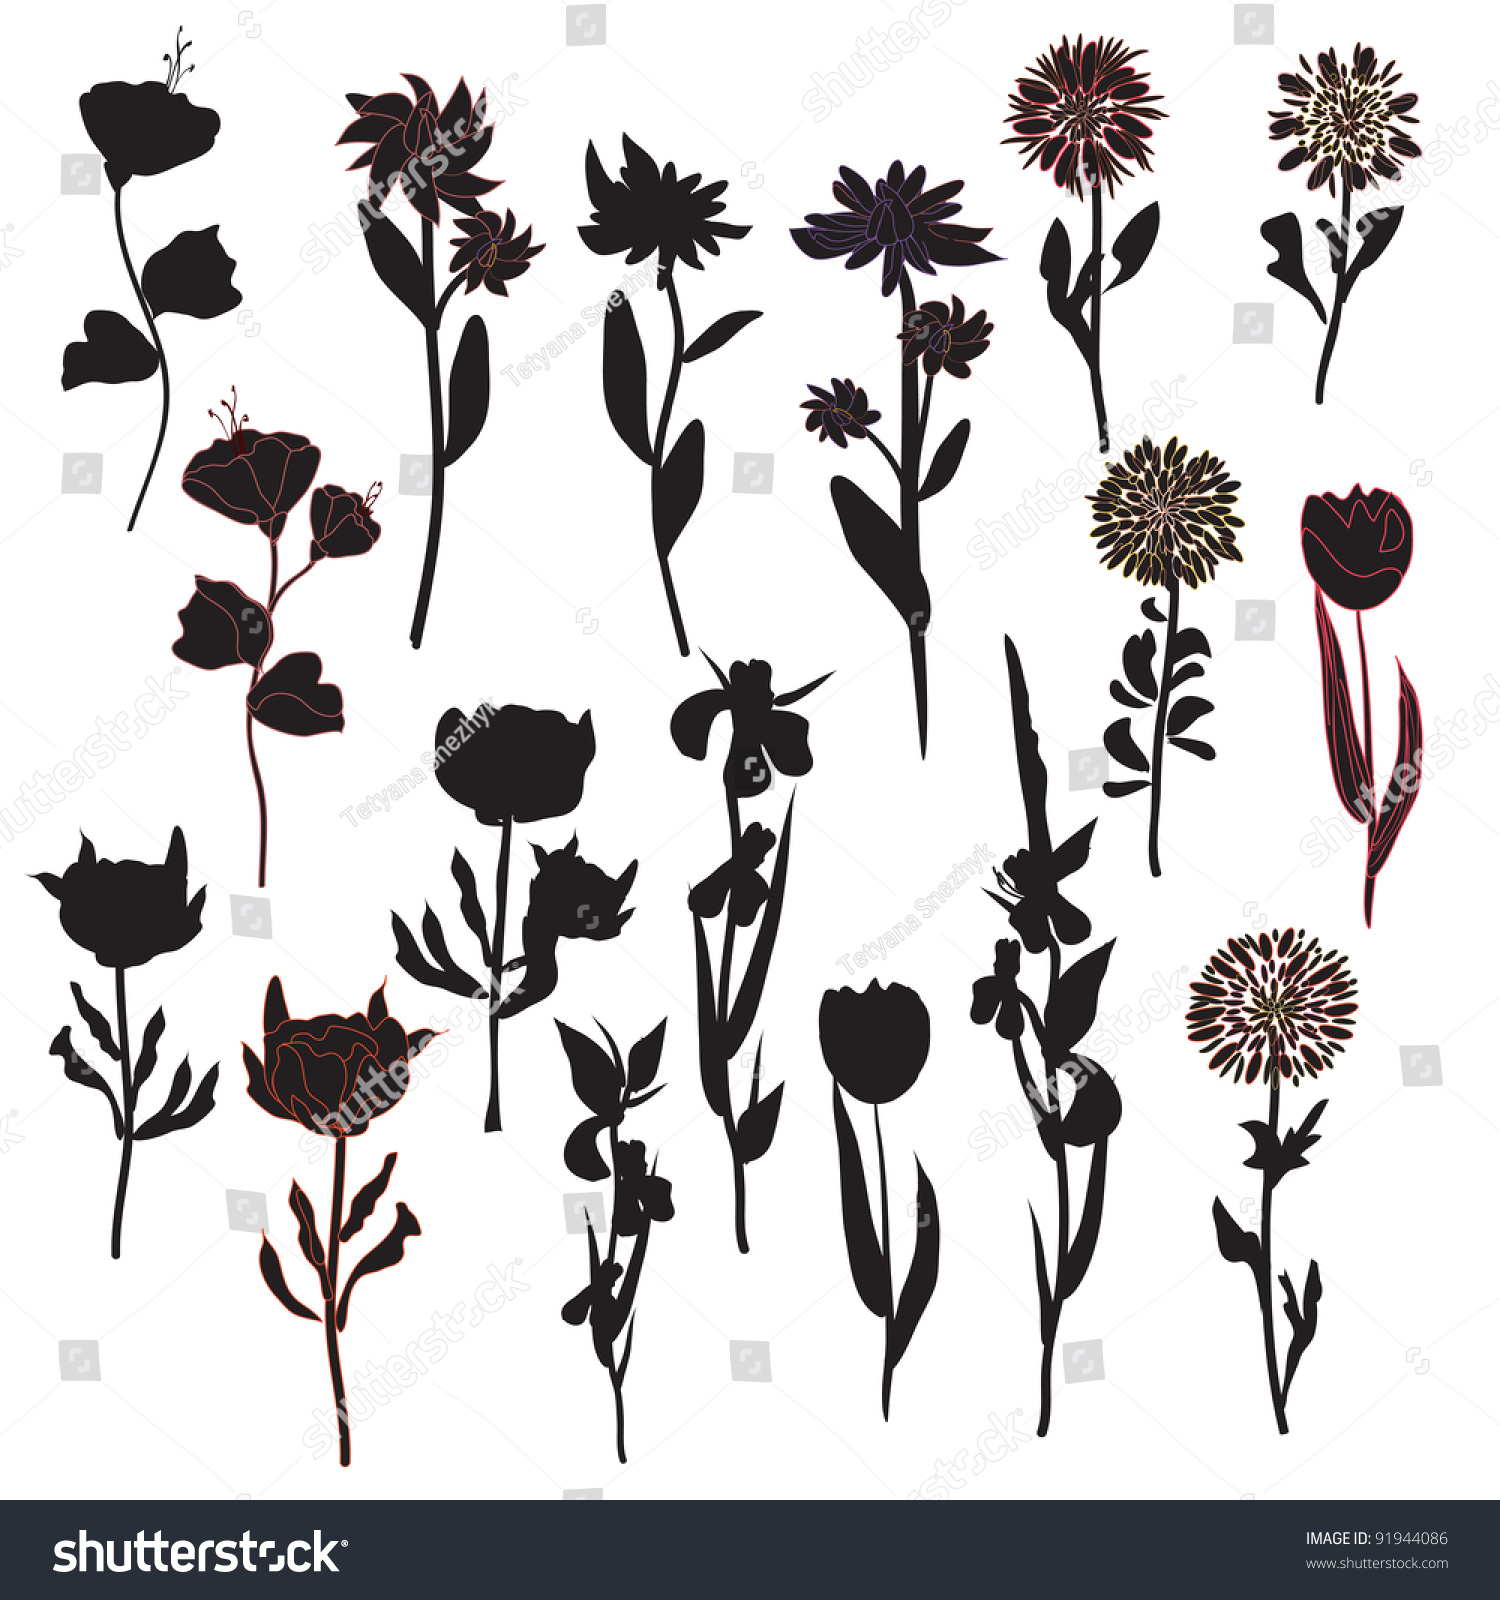 Flowers Silhouette Set In Black Stock Vector Illustration 91944086